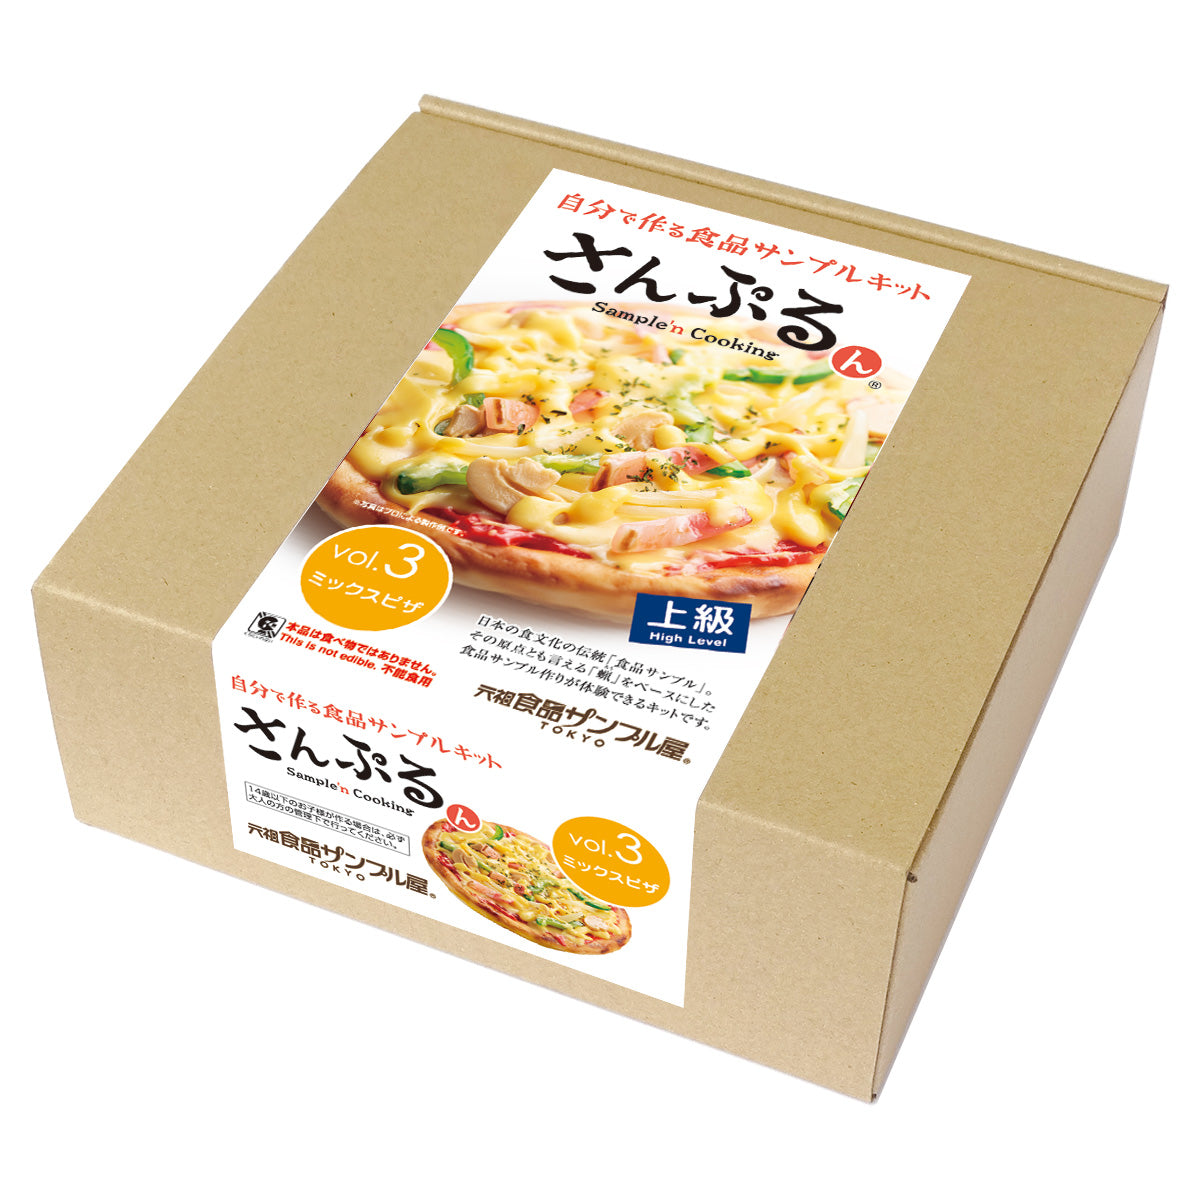 自分でつくる食品サンプル製作キット「さんぷるんvol.2 ミックスピザ」のパッケージ画像です。